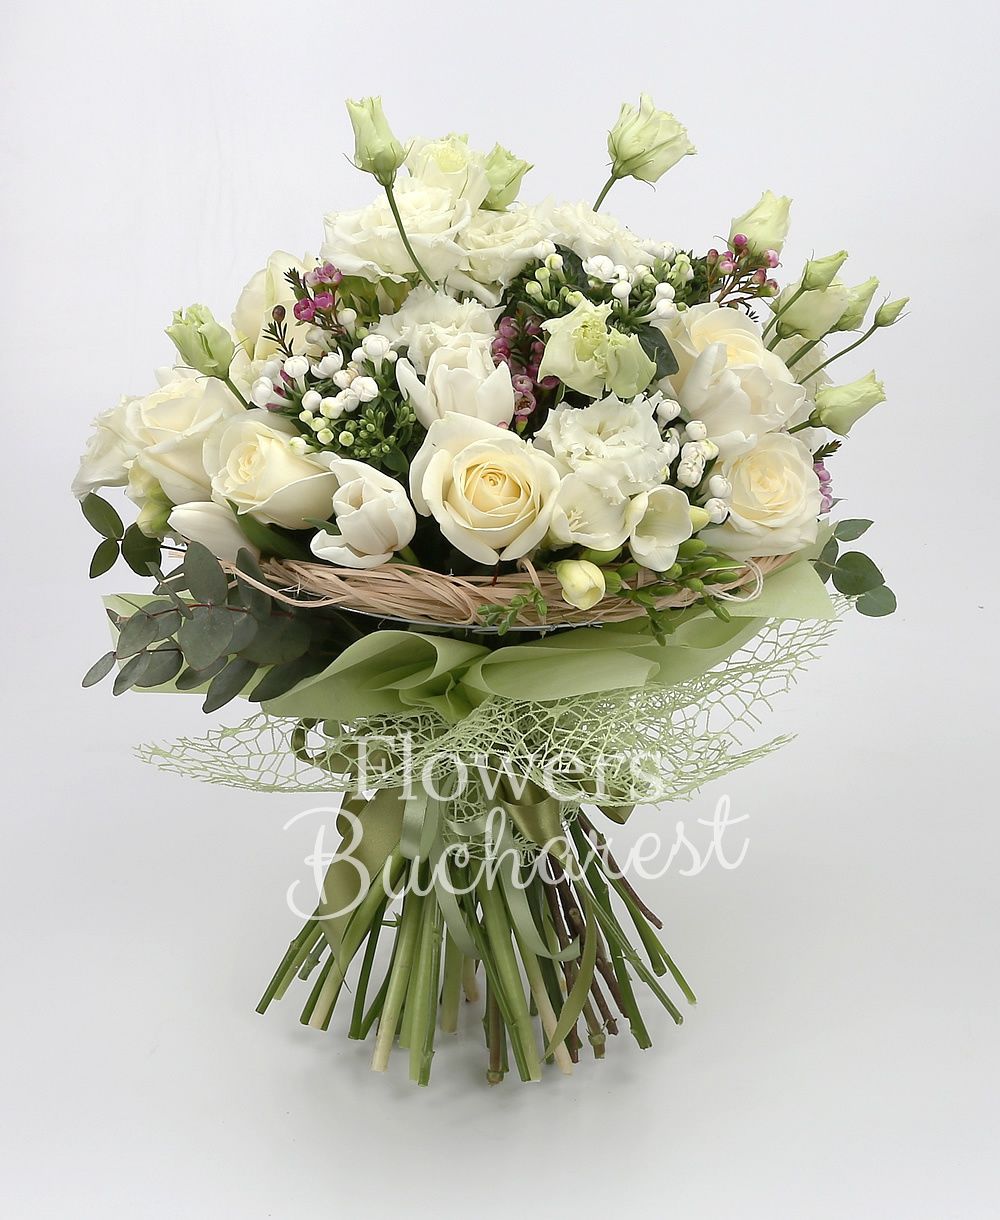 9 white roses, 5 white lisianthus, 10 white tulips, 5 white bouvardia, 10 white freesias, greenery